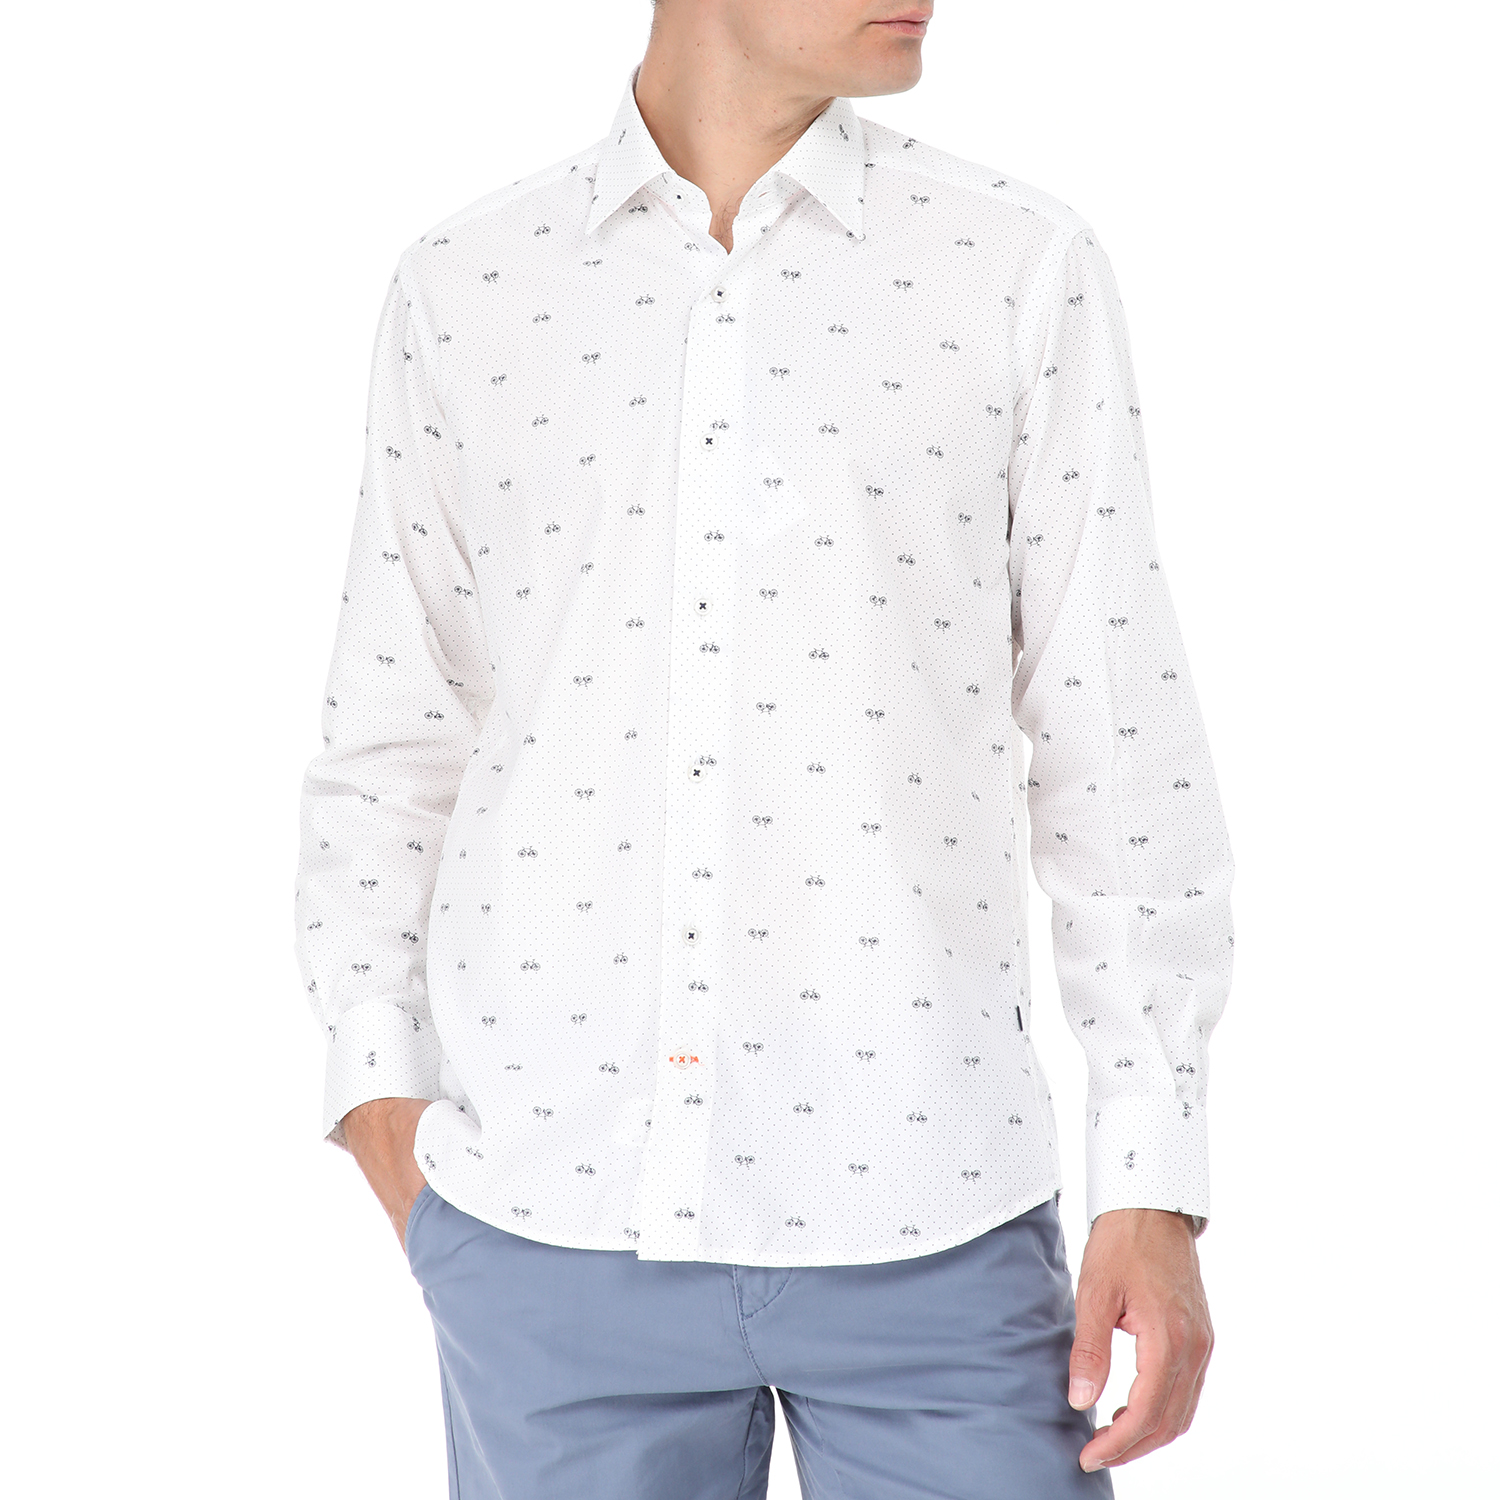 Ανδρικά/Ρούχα/Πουκάμισα/Μακρυμάνικα DORS - Ανδρικό πουκάμισο DORS λευκό